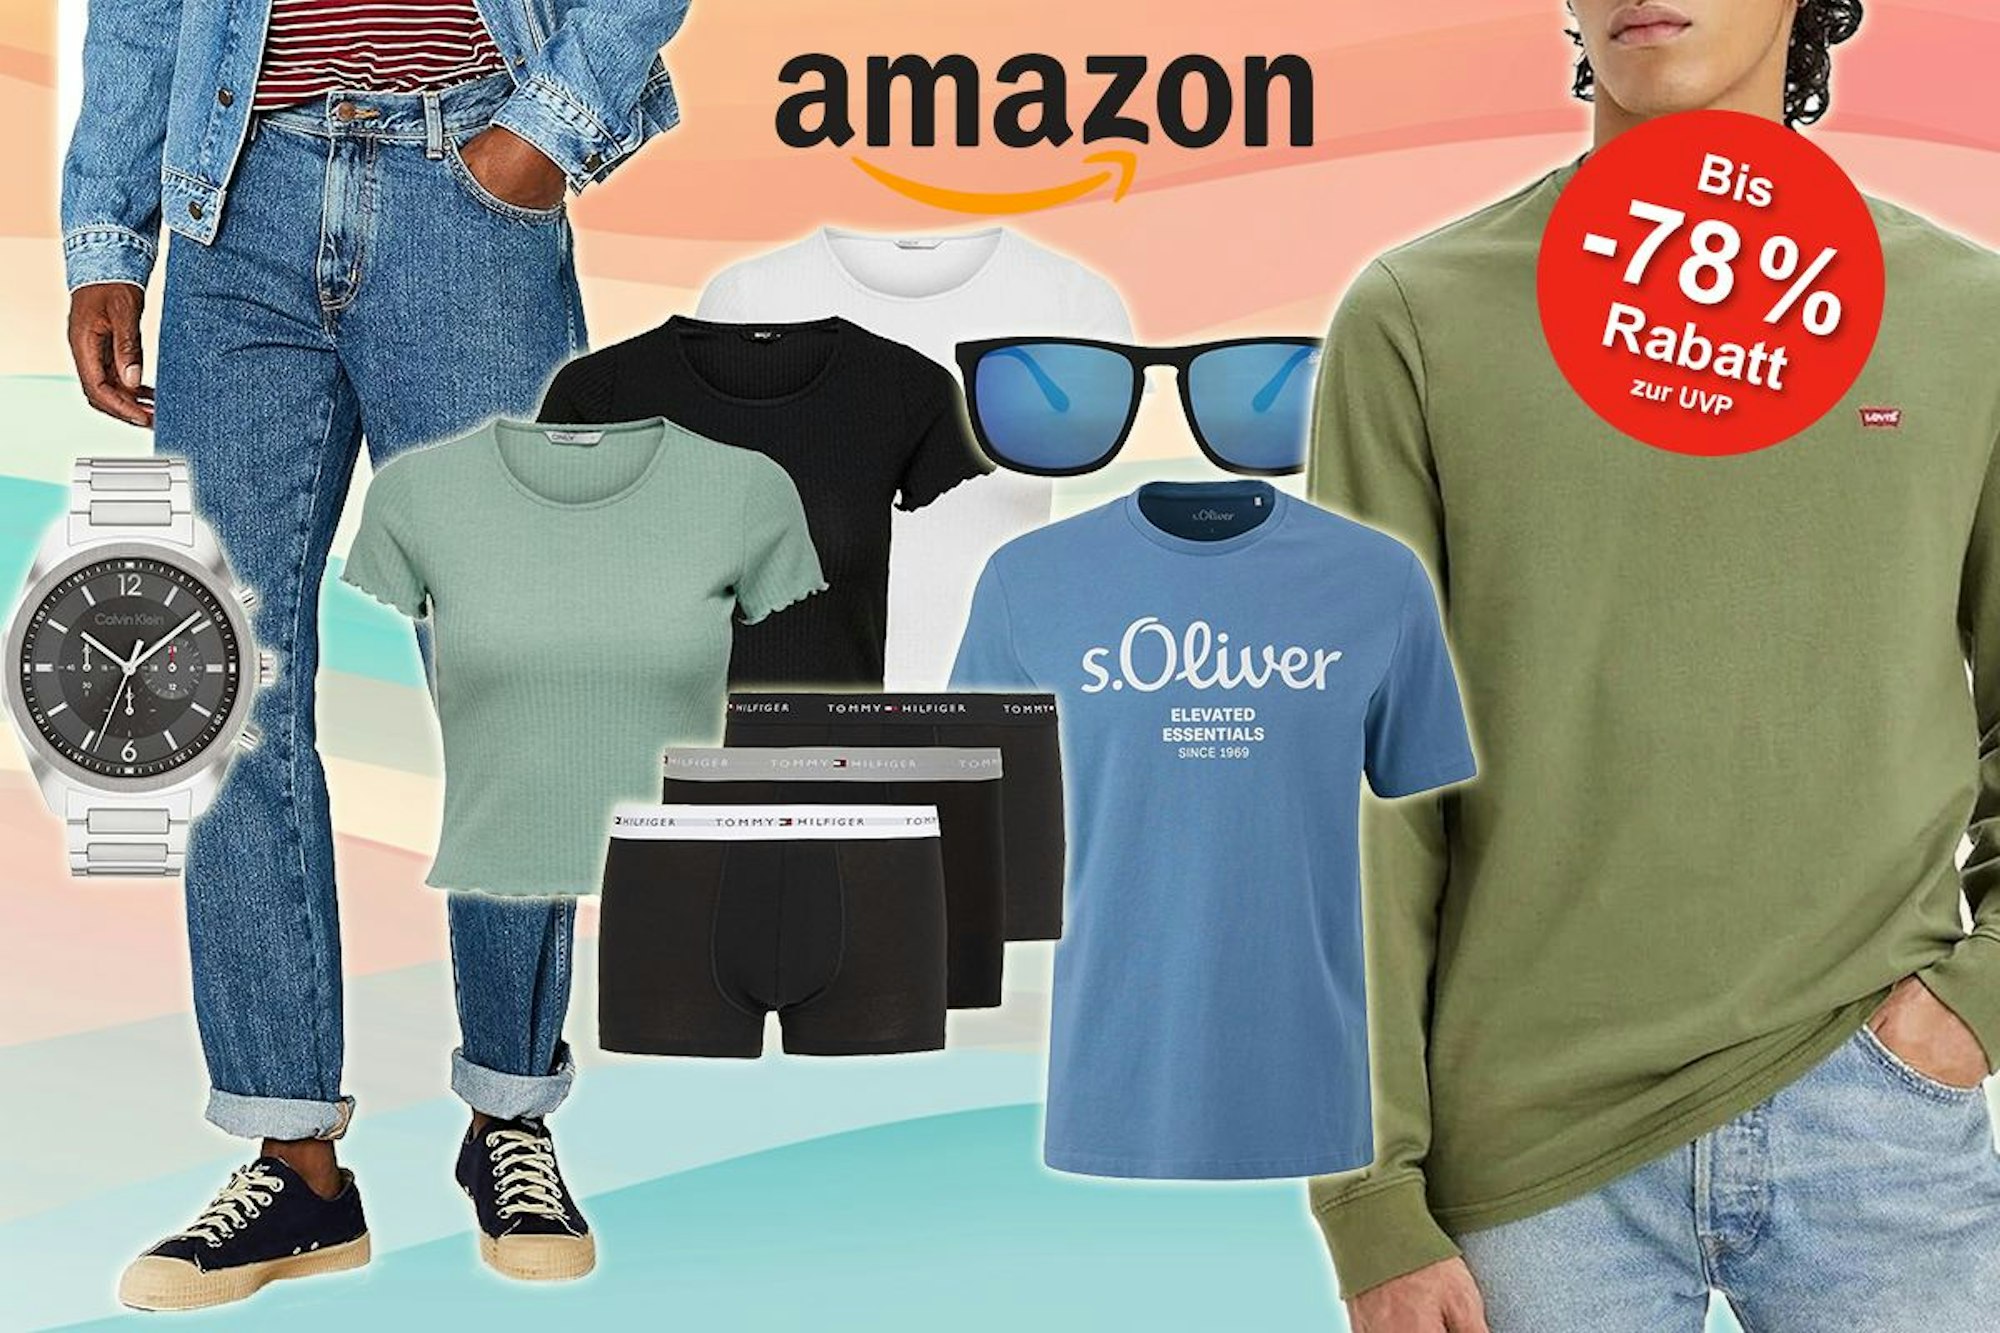 Amazon Juli Fashion Sale: Spare bis zu 78% auf angesagte Mode bei Amazon